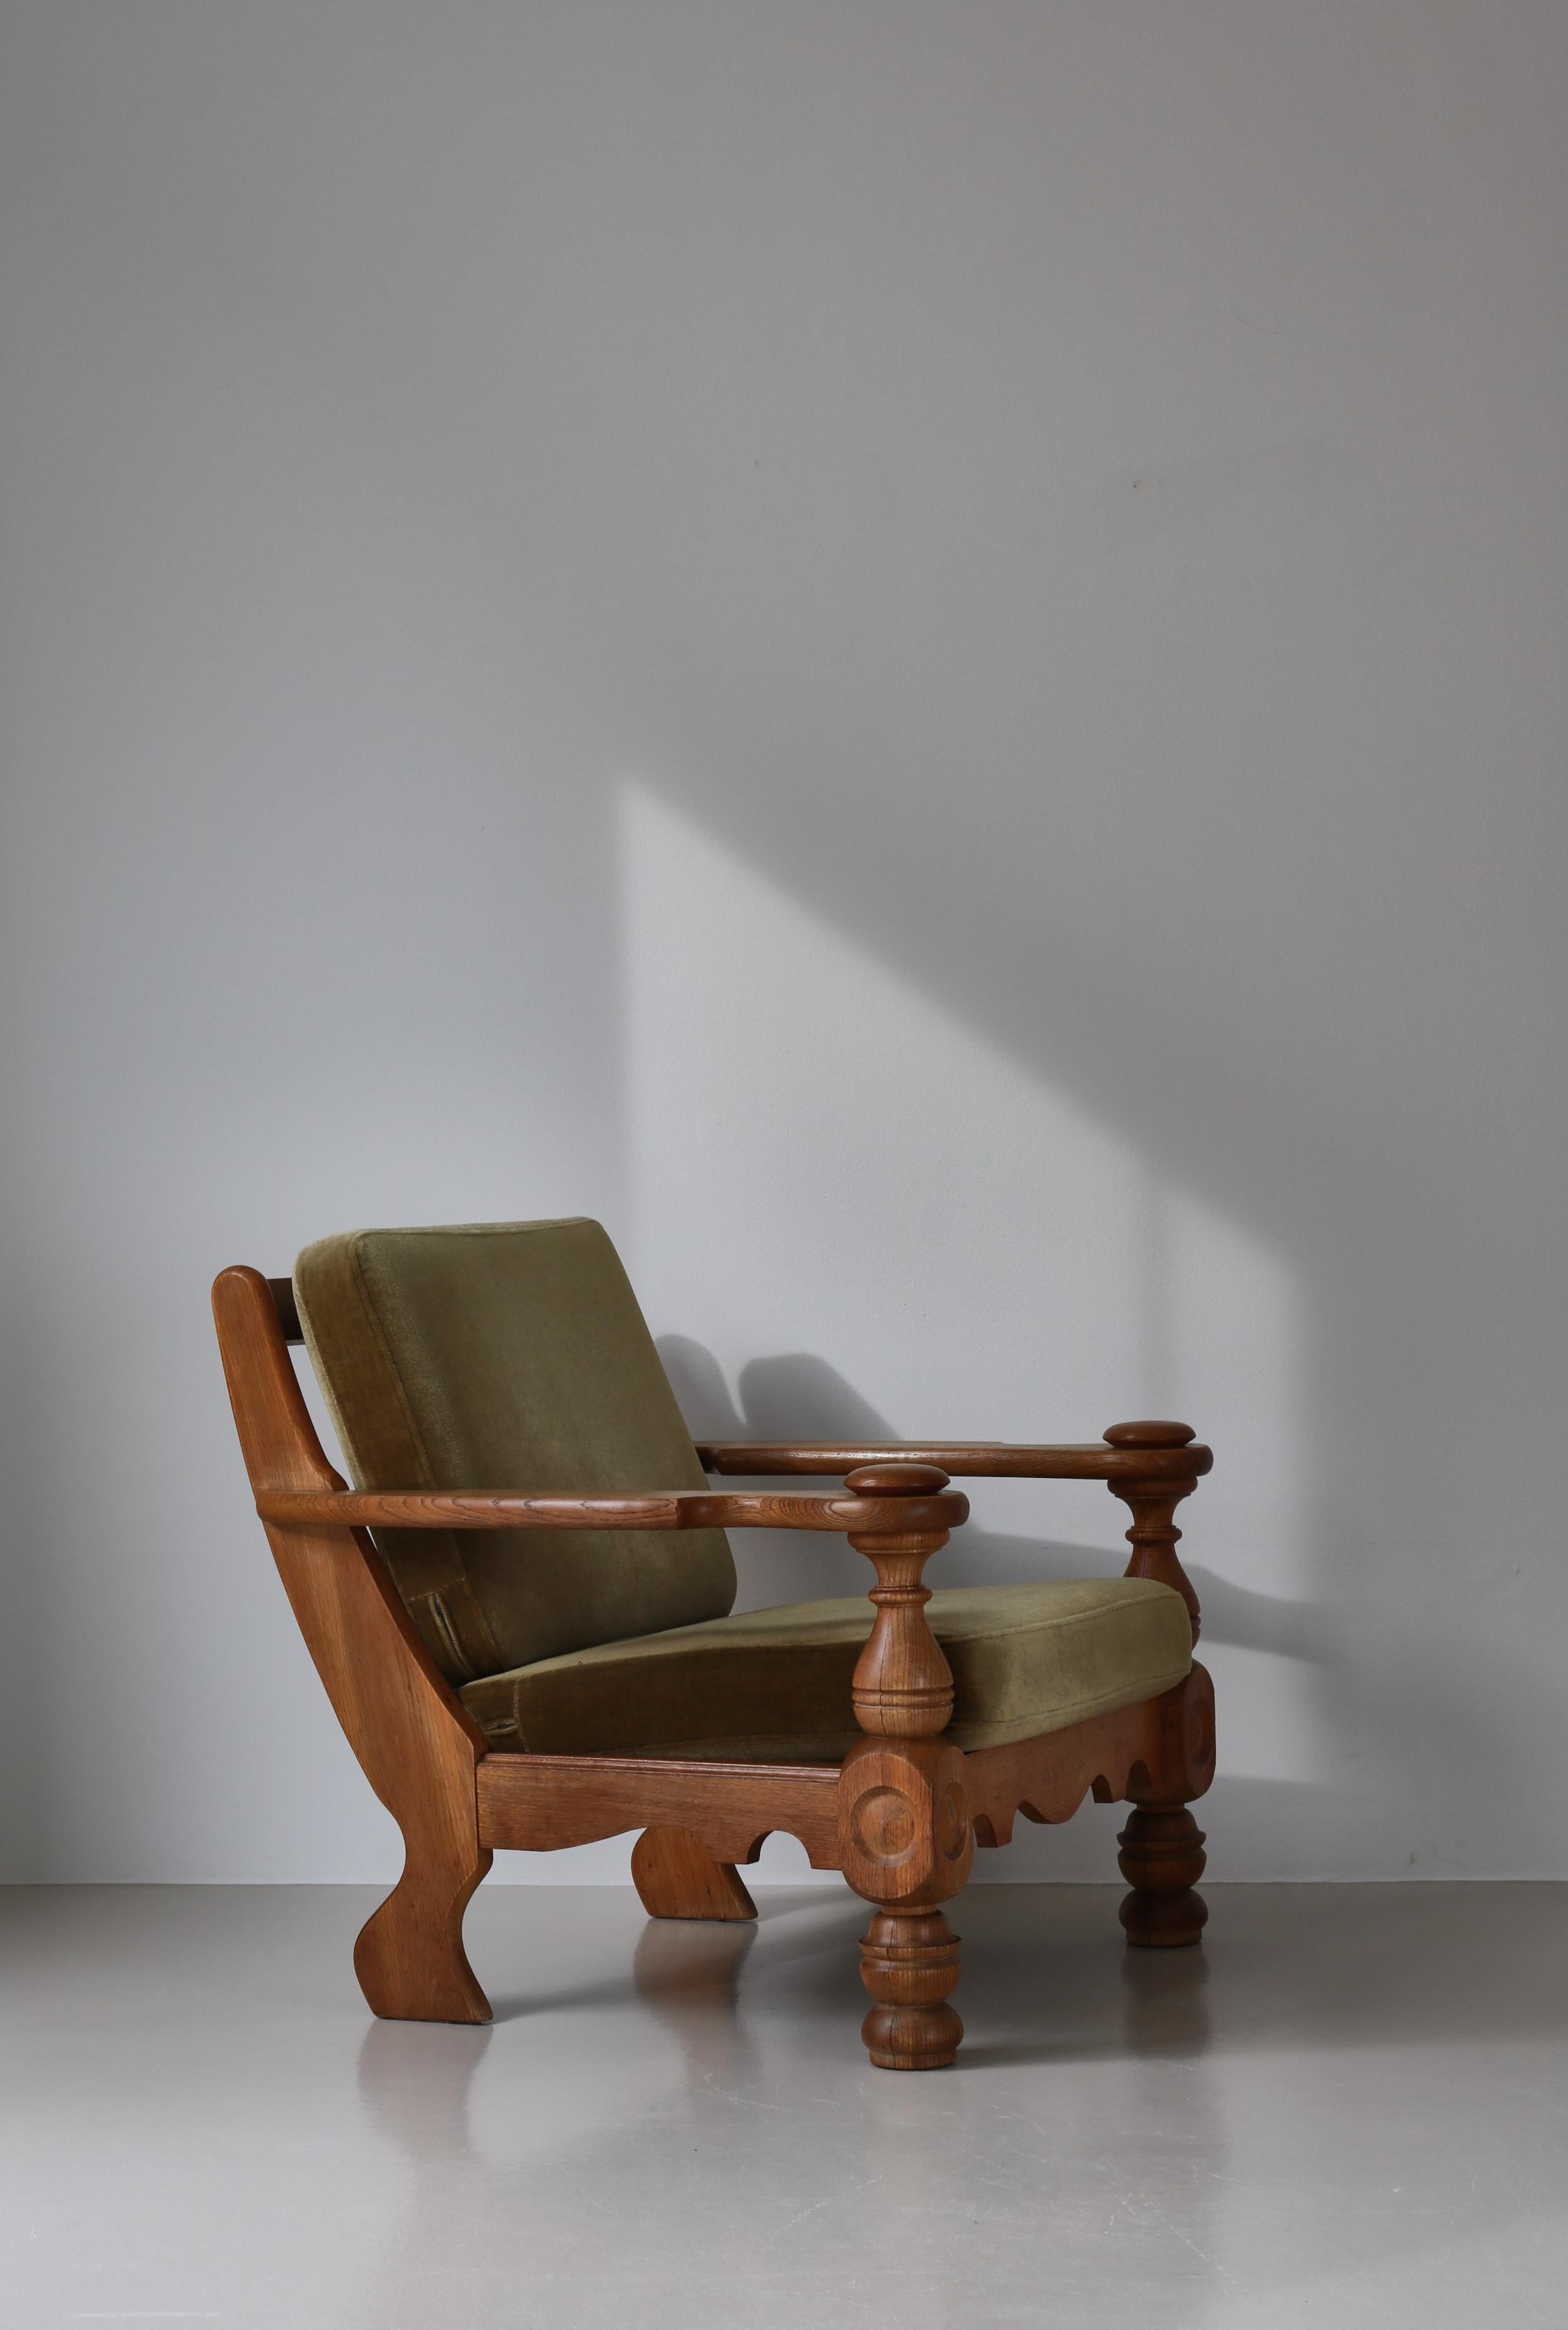 Sehr charmanter und rustikaler großer Sessel, entworfen von Henry Kjærnulf und hergestellt in den 1950er Jahren. Der Stuhl ist aus massiver Eiche gefertigt und die losen Kissen sind mit grünem Mohair gepolstert. Großer Sitzkomfort.
Der dänische